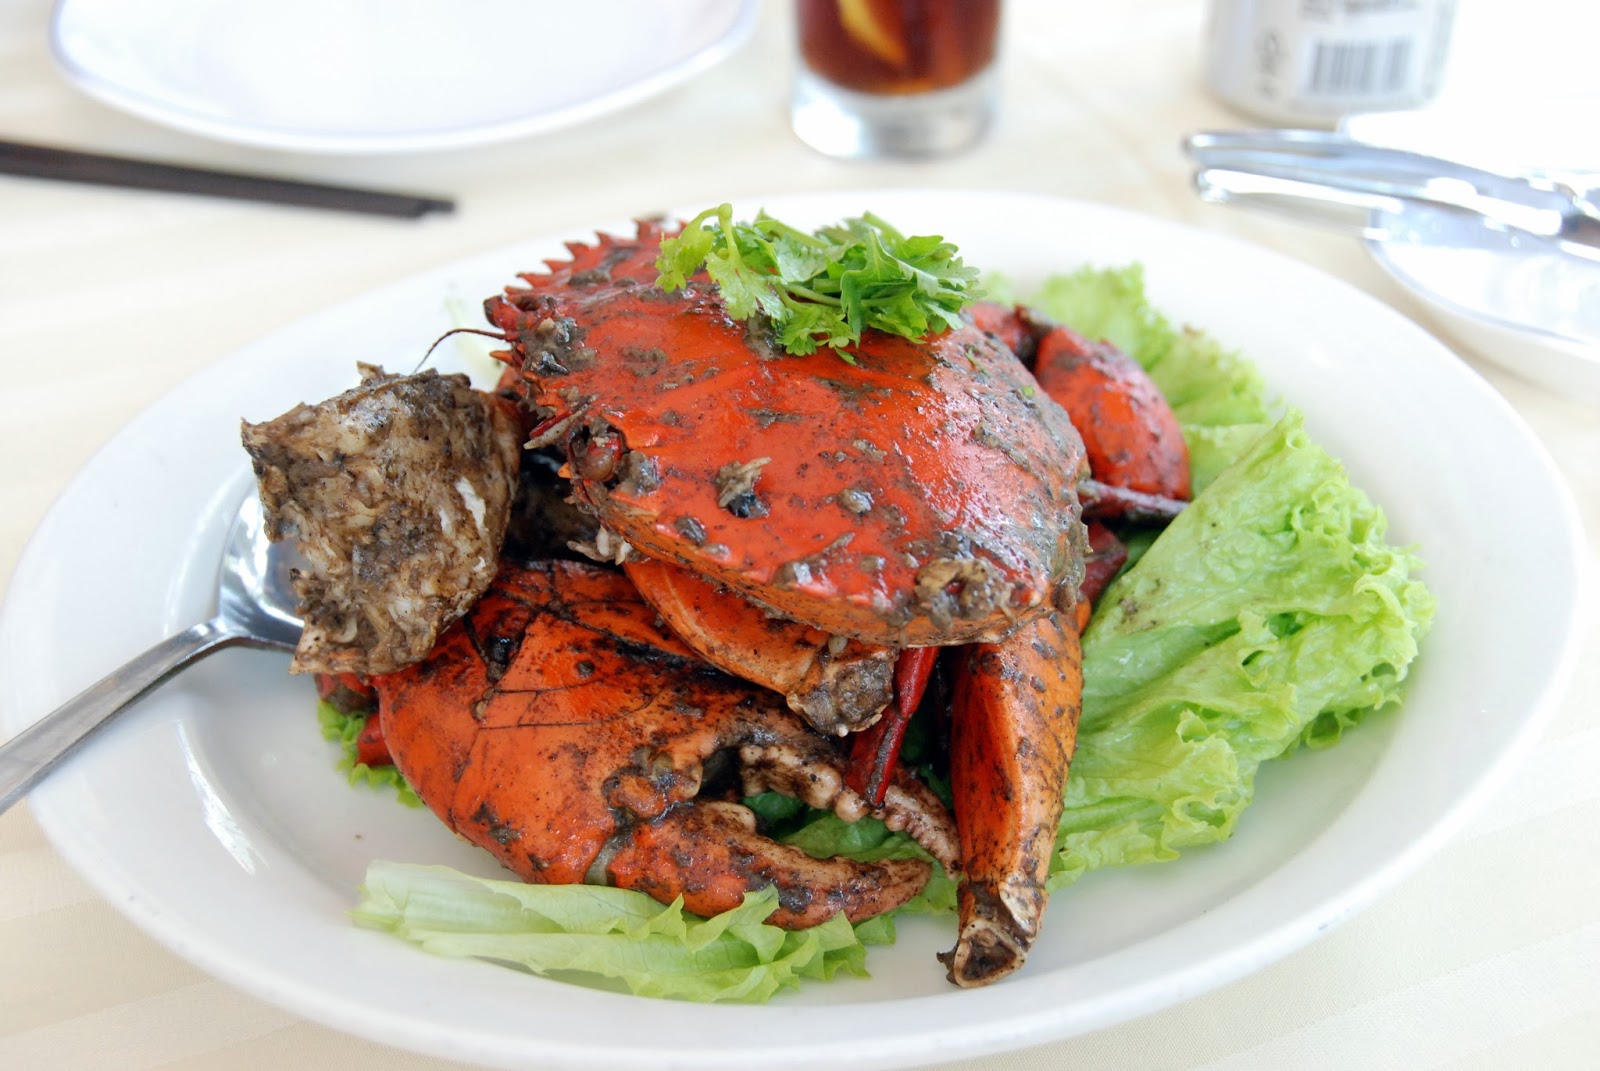 麻辣螃蟹,麻辣螃蟹的家常做法 - 美食杰麻辣螃蟹做法大全